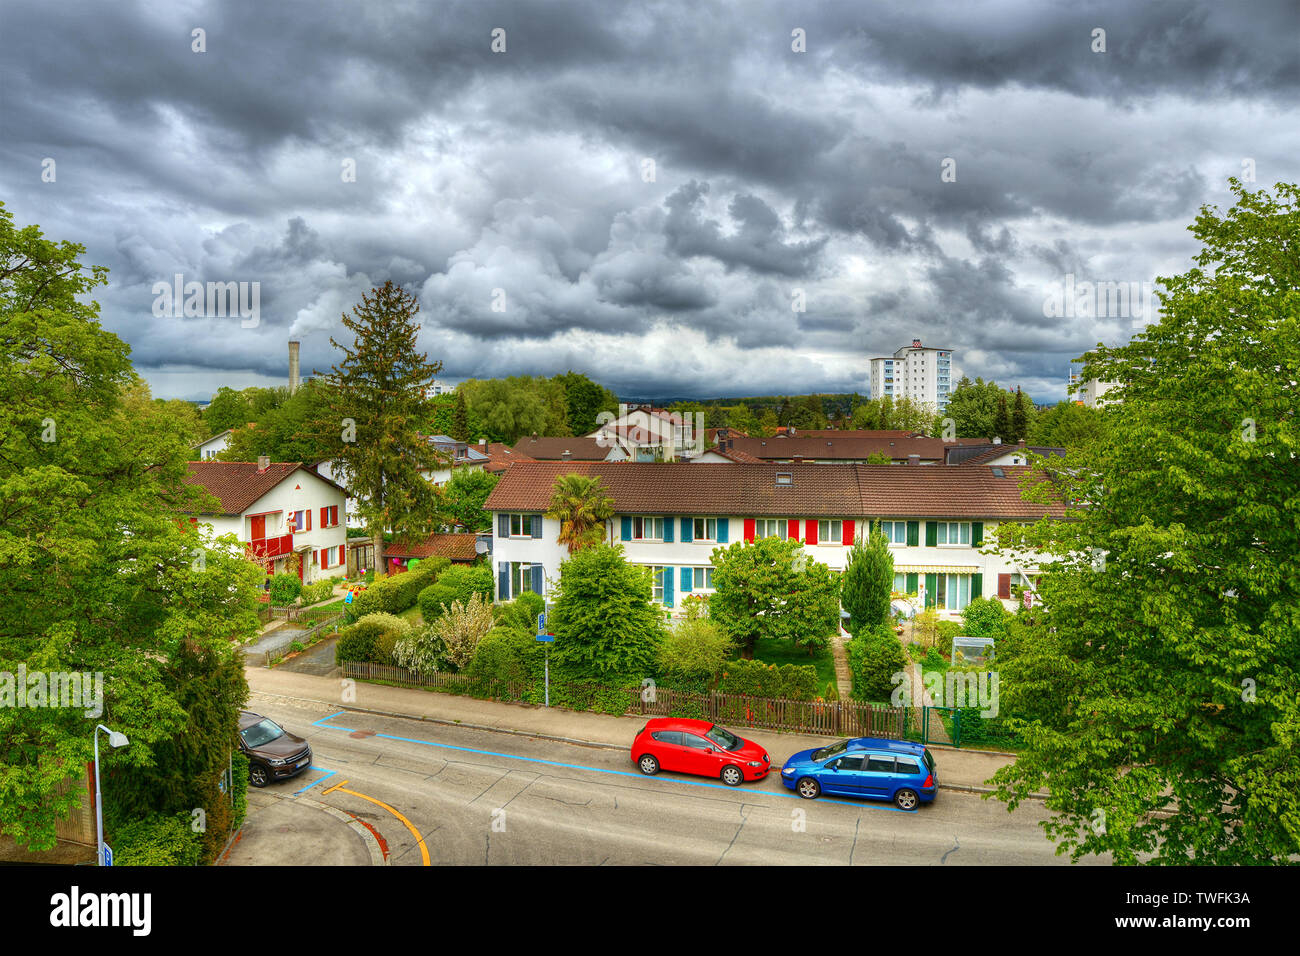 Rain clouds over city, Zurich, Switzerland Stock Photo